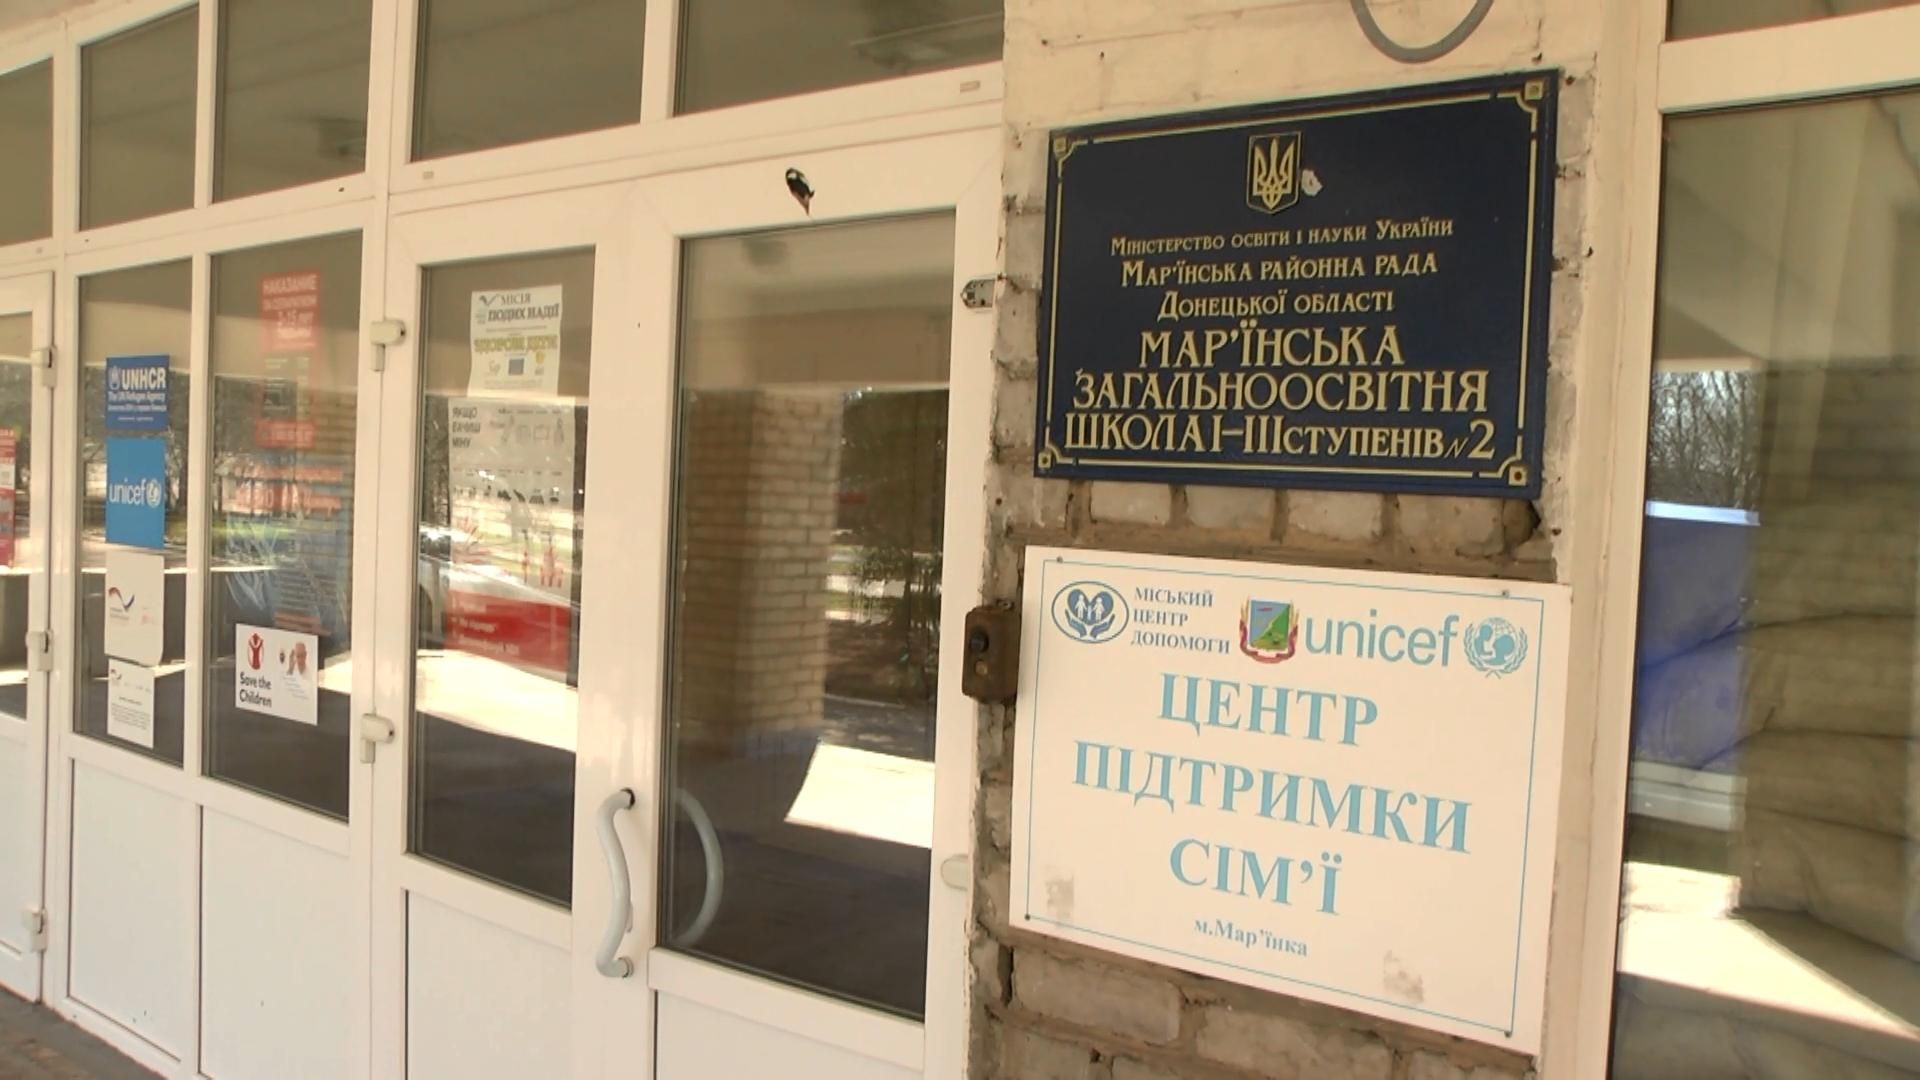 Прифронтовой школе в Марьинке помогают десятки международных организаций